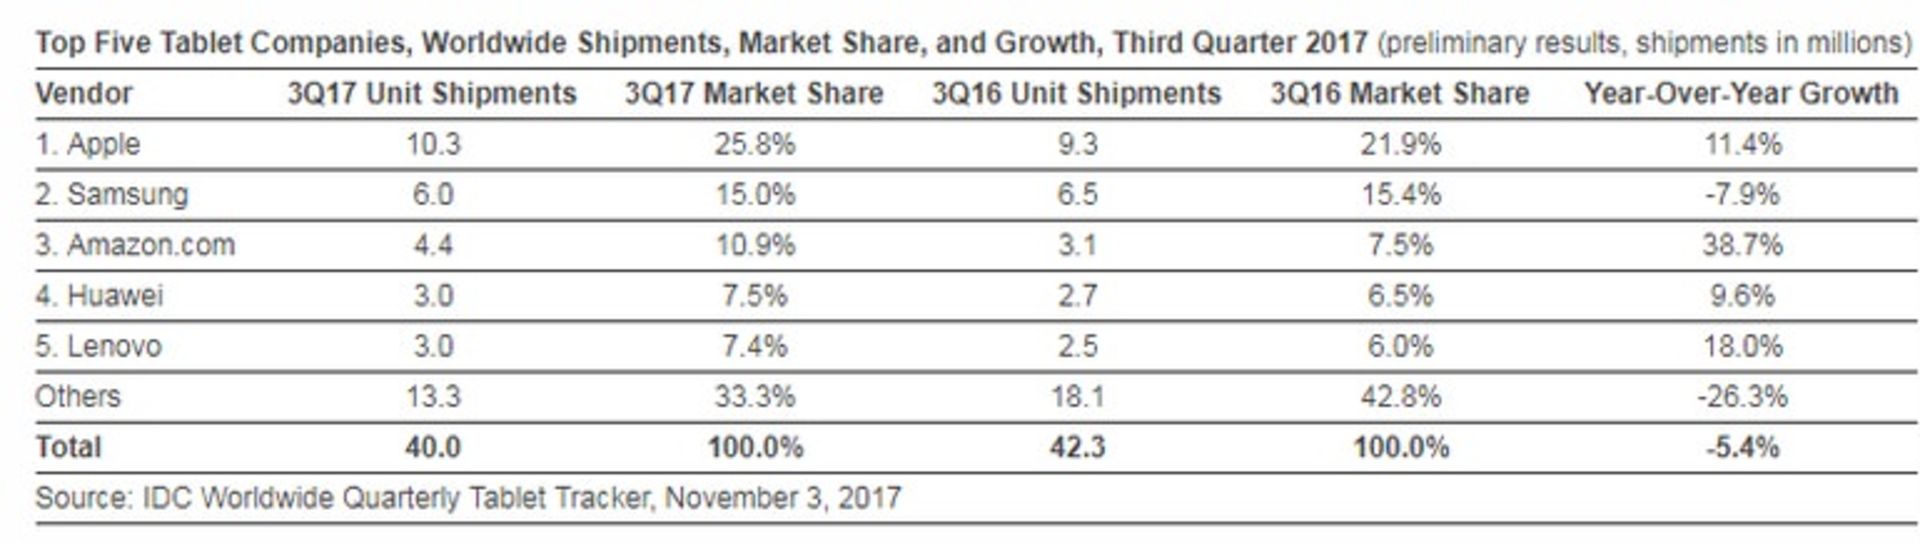 Tablet Market Share Q3 2017